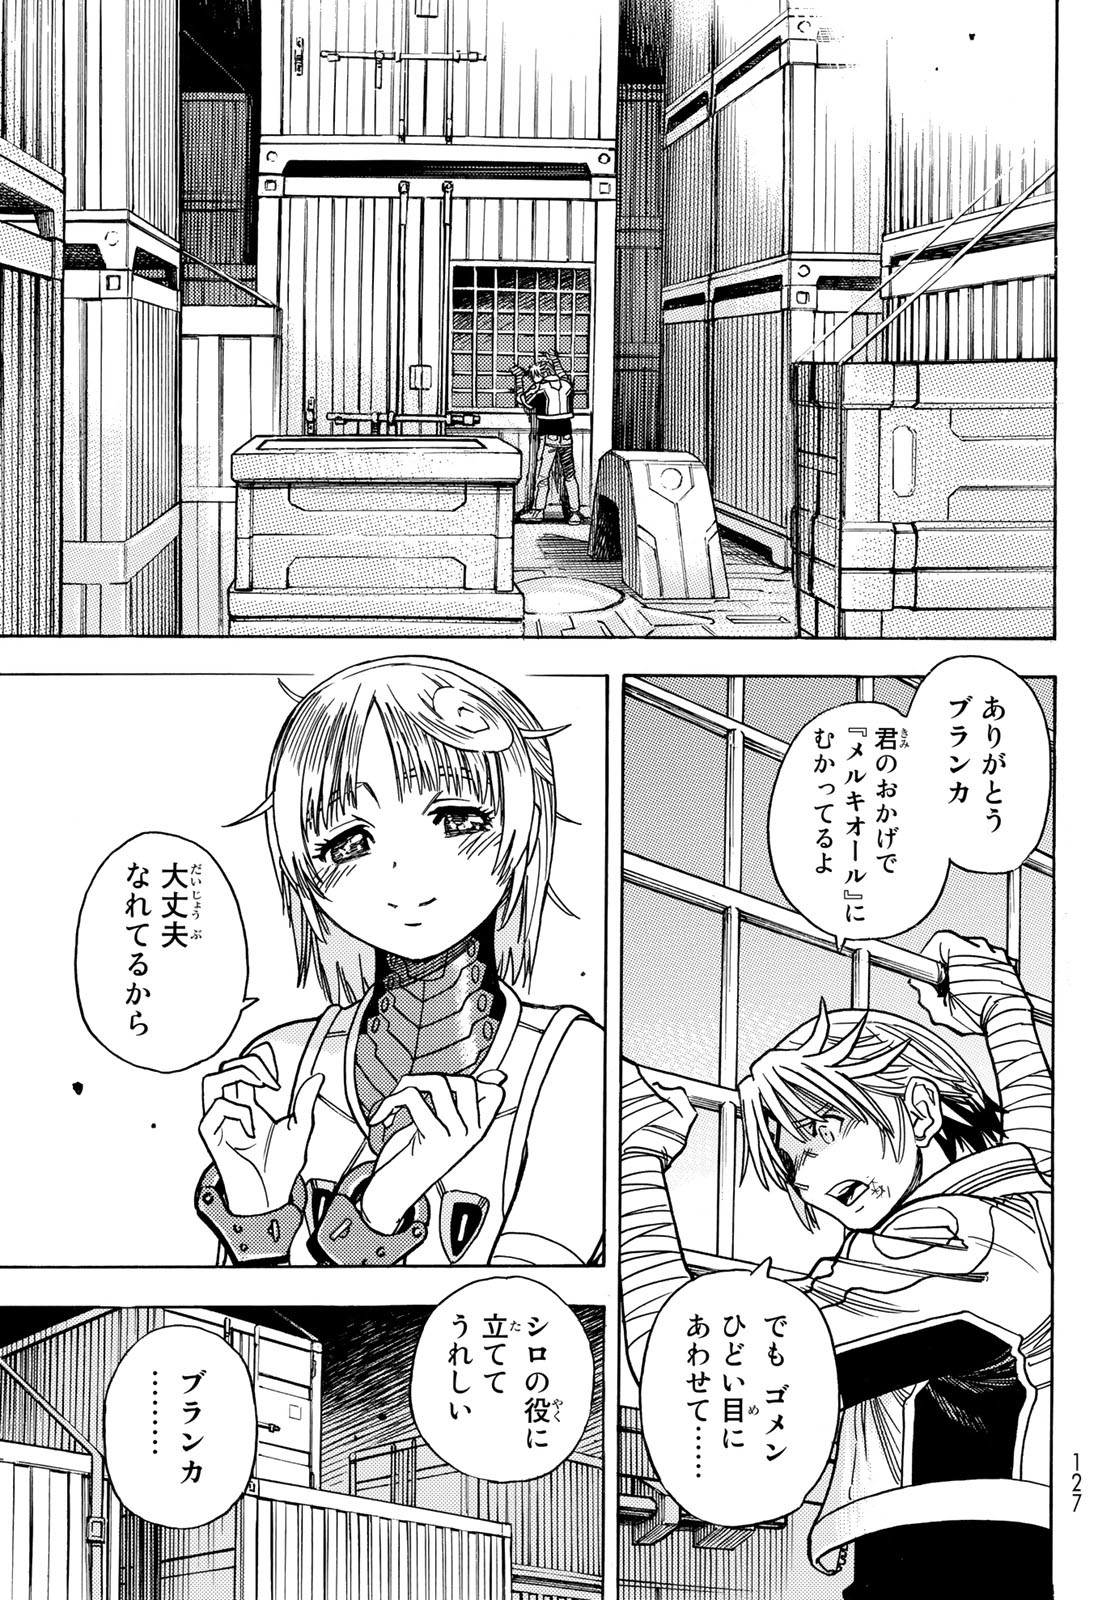 Mugou no Schnell Gear: Chikyuugai Kisouka AI - Chapter 42 - Page 15